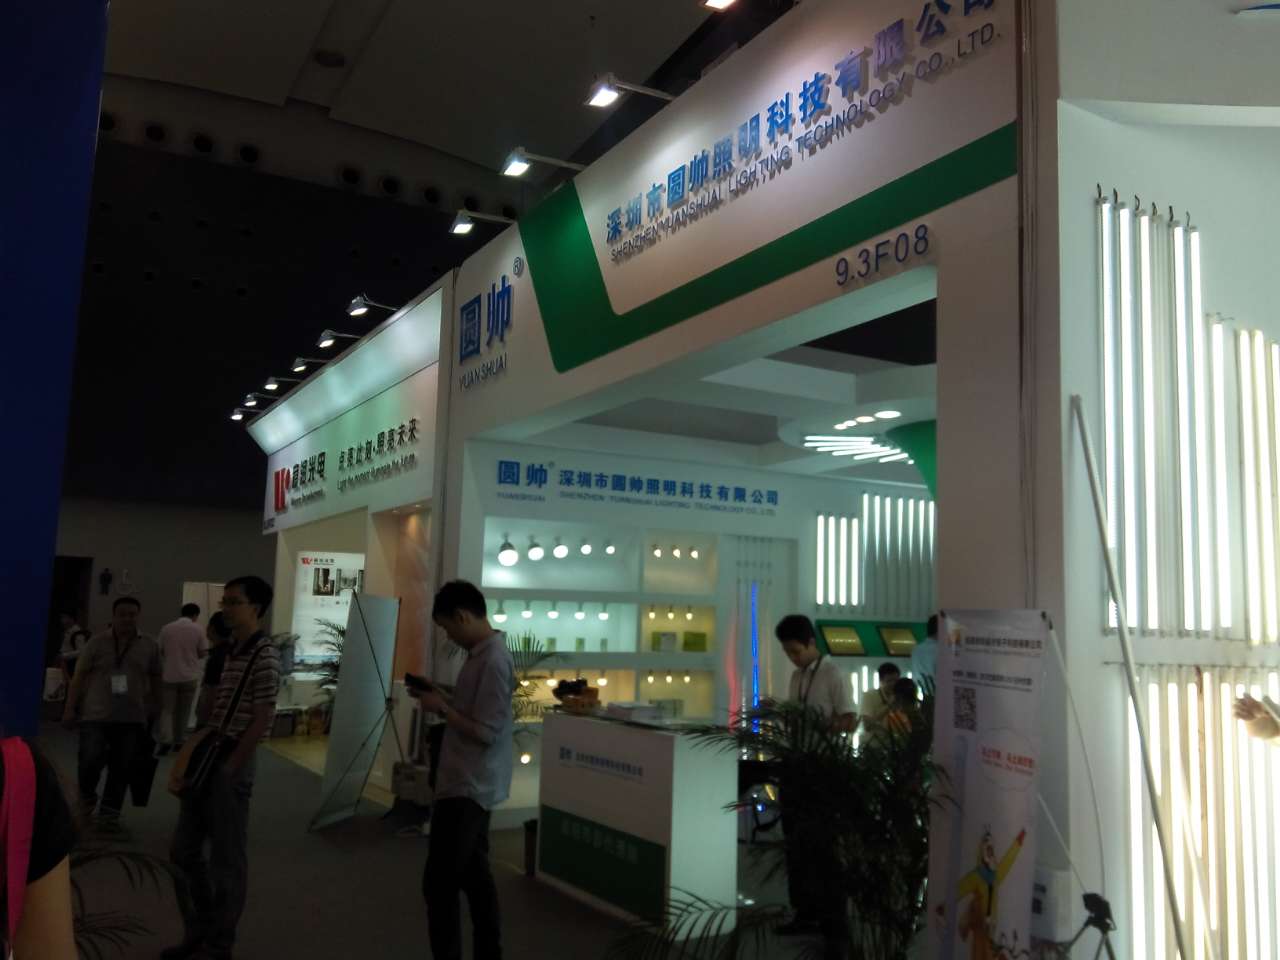 Huizhou round handsome technology co., LTD